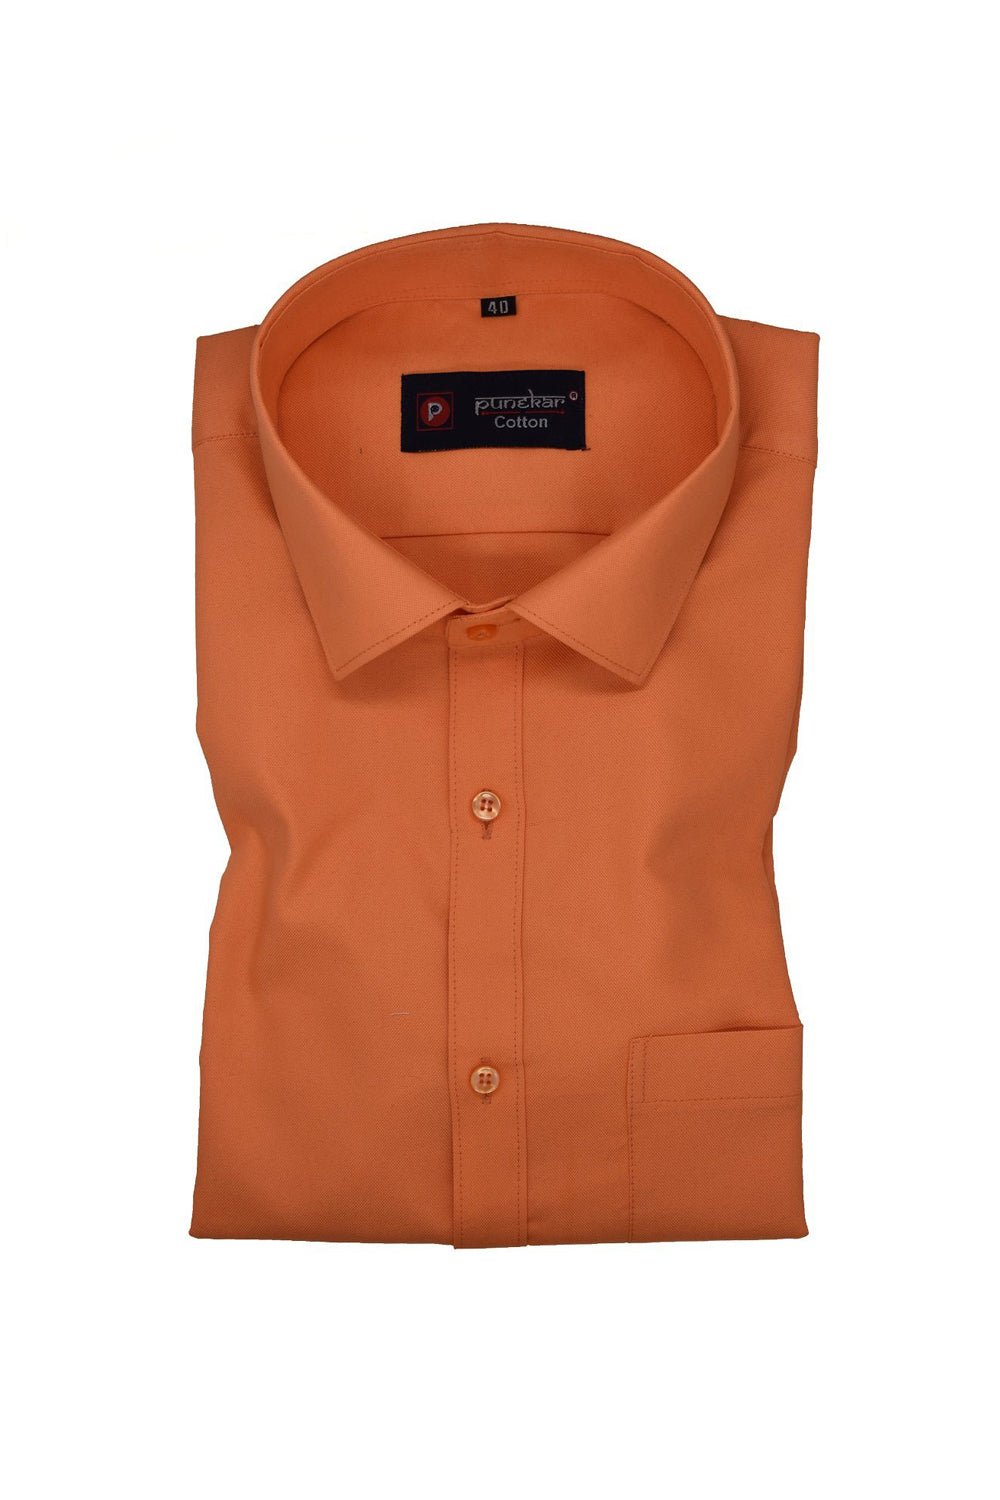 Punekar Cotton Orange Color Rich Cotton Formal Shirt For Men&